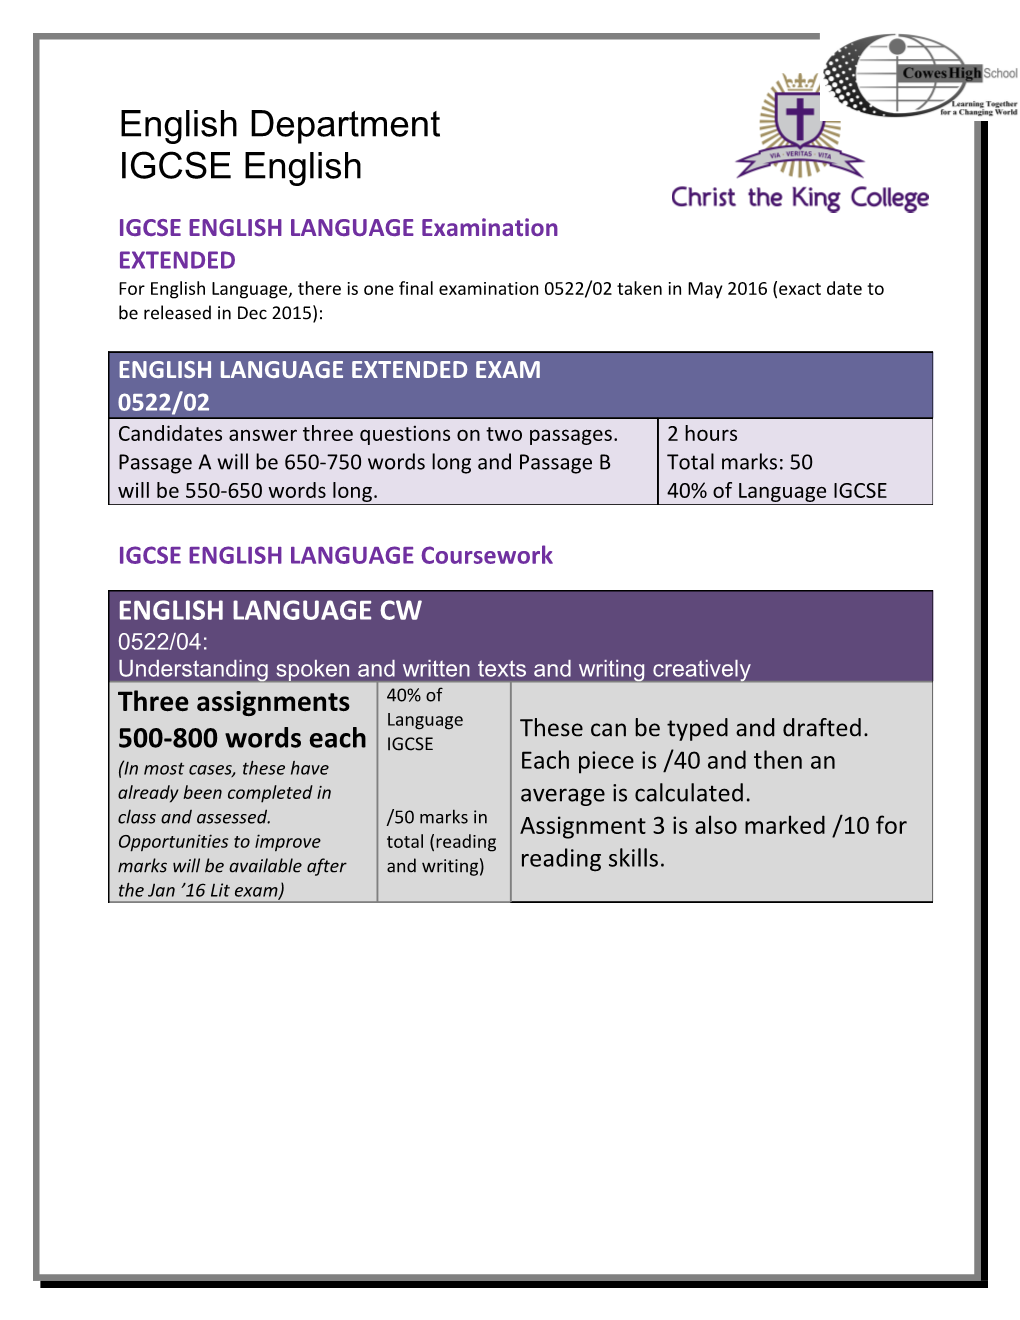 IGCSE ENGLISH LANGUAGE Examination EXTENDED